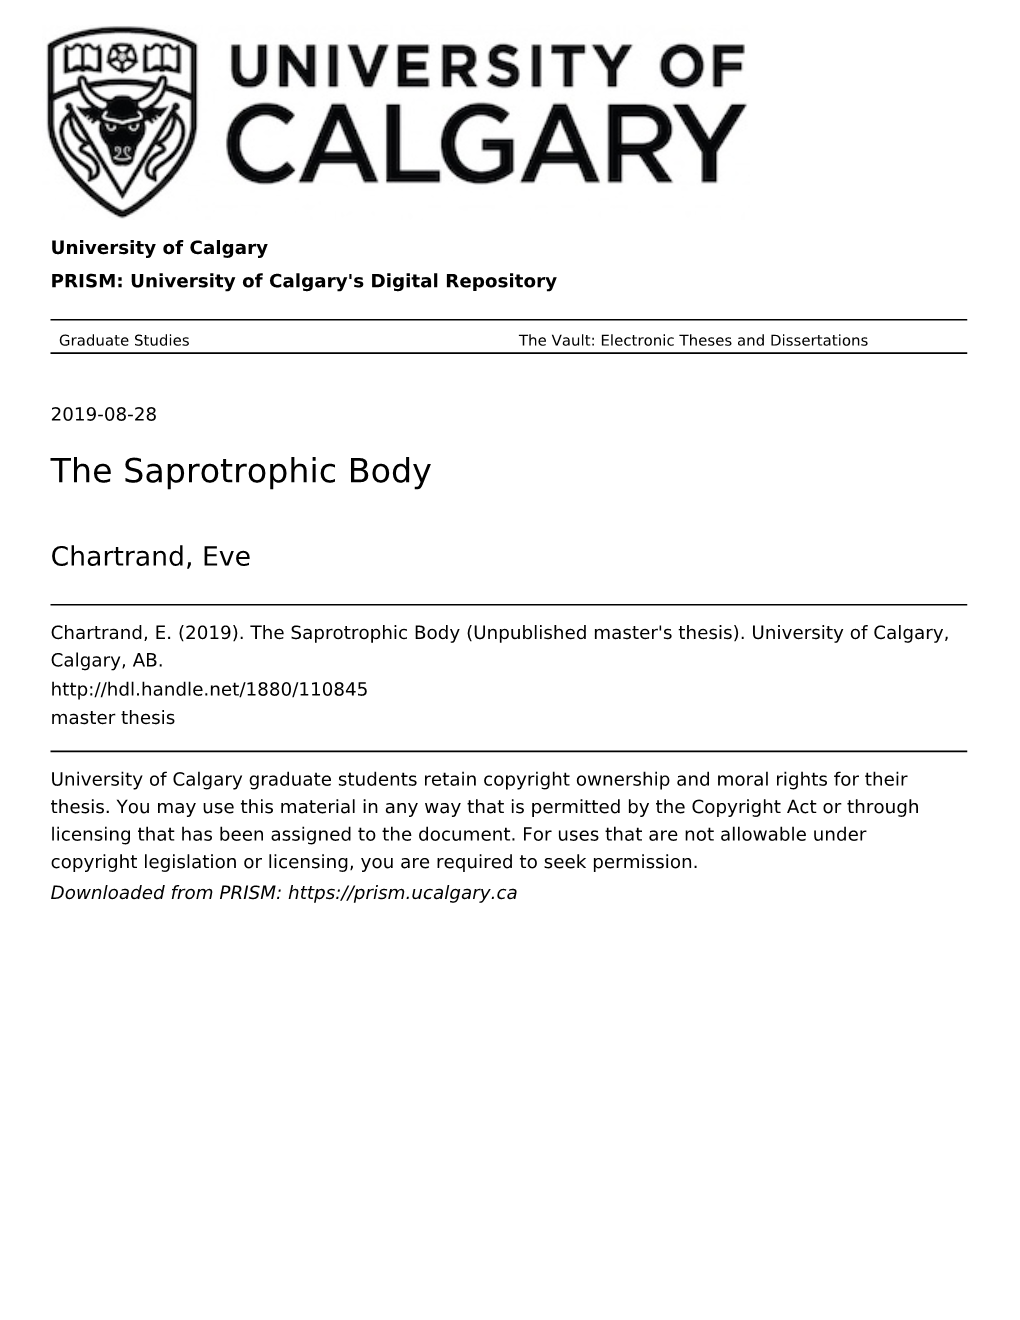 The Saprotrophic Body